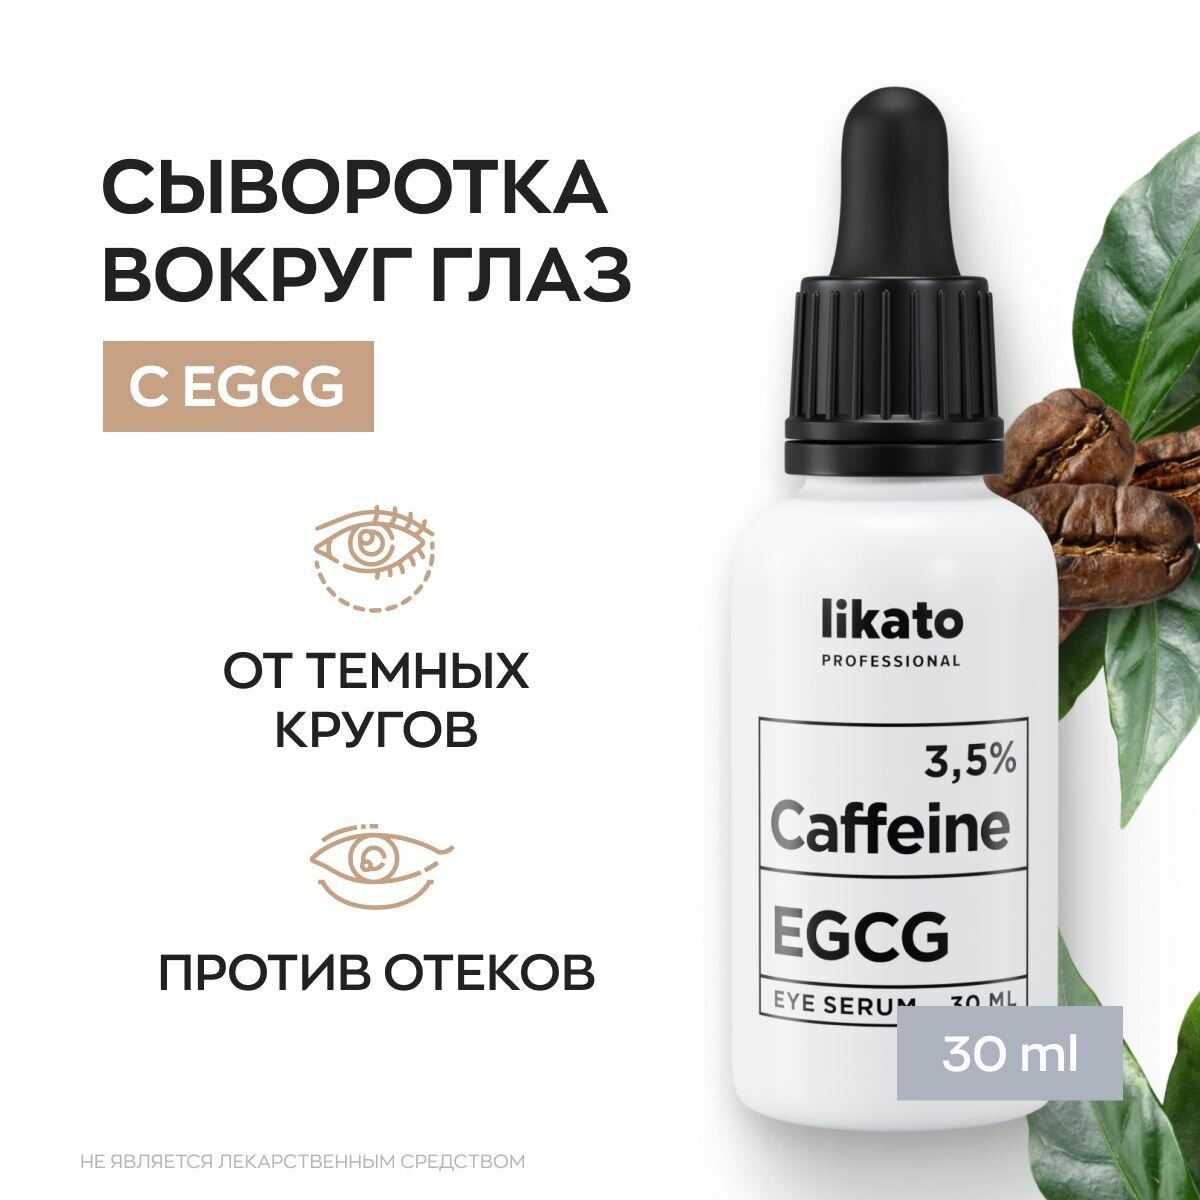 Likato Professional Активная сыворотка для области вокруг глаз, от темных кругов под глазами, от отеков и морщин с кофеином 3,5% + EGCG, 30 мл